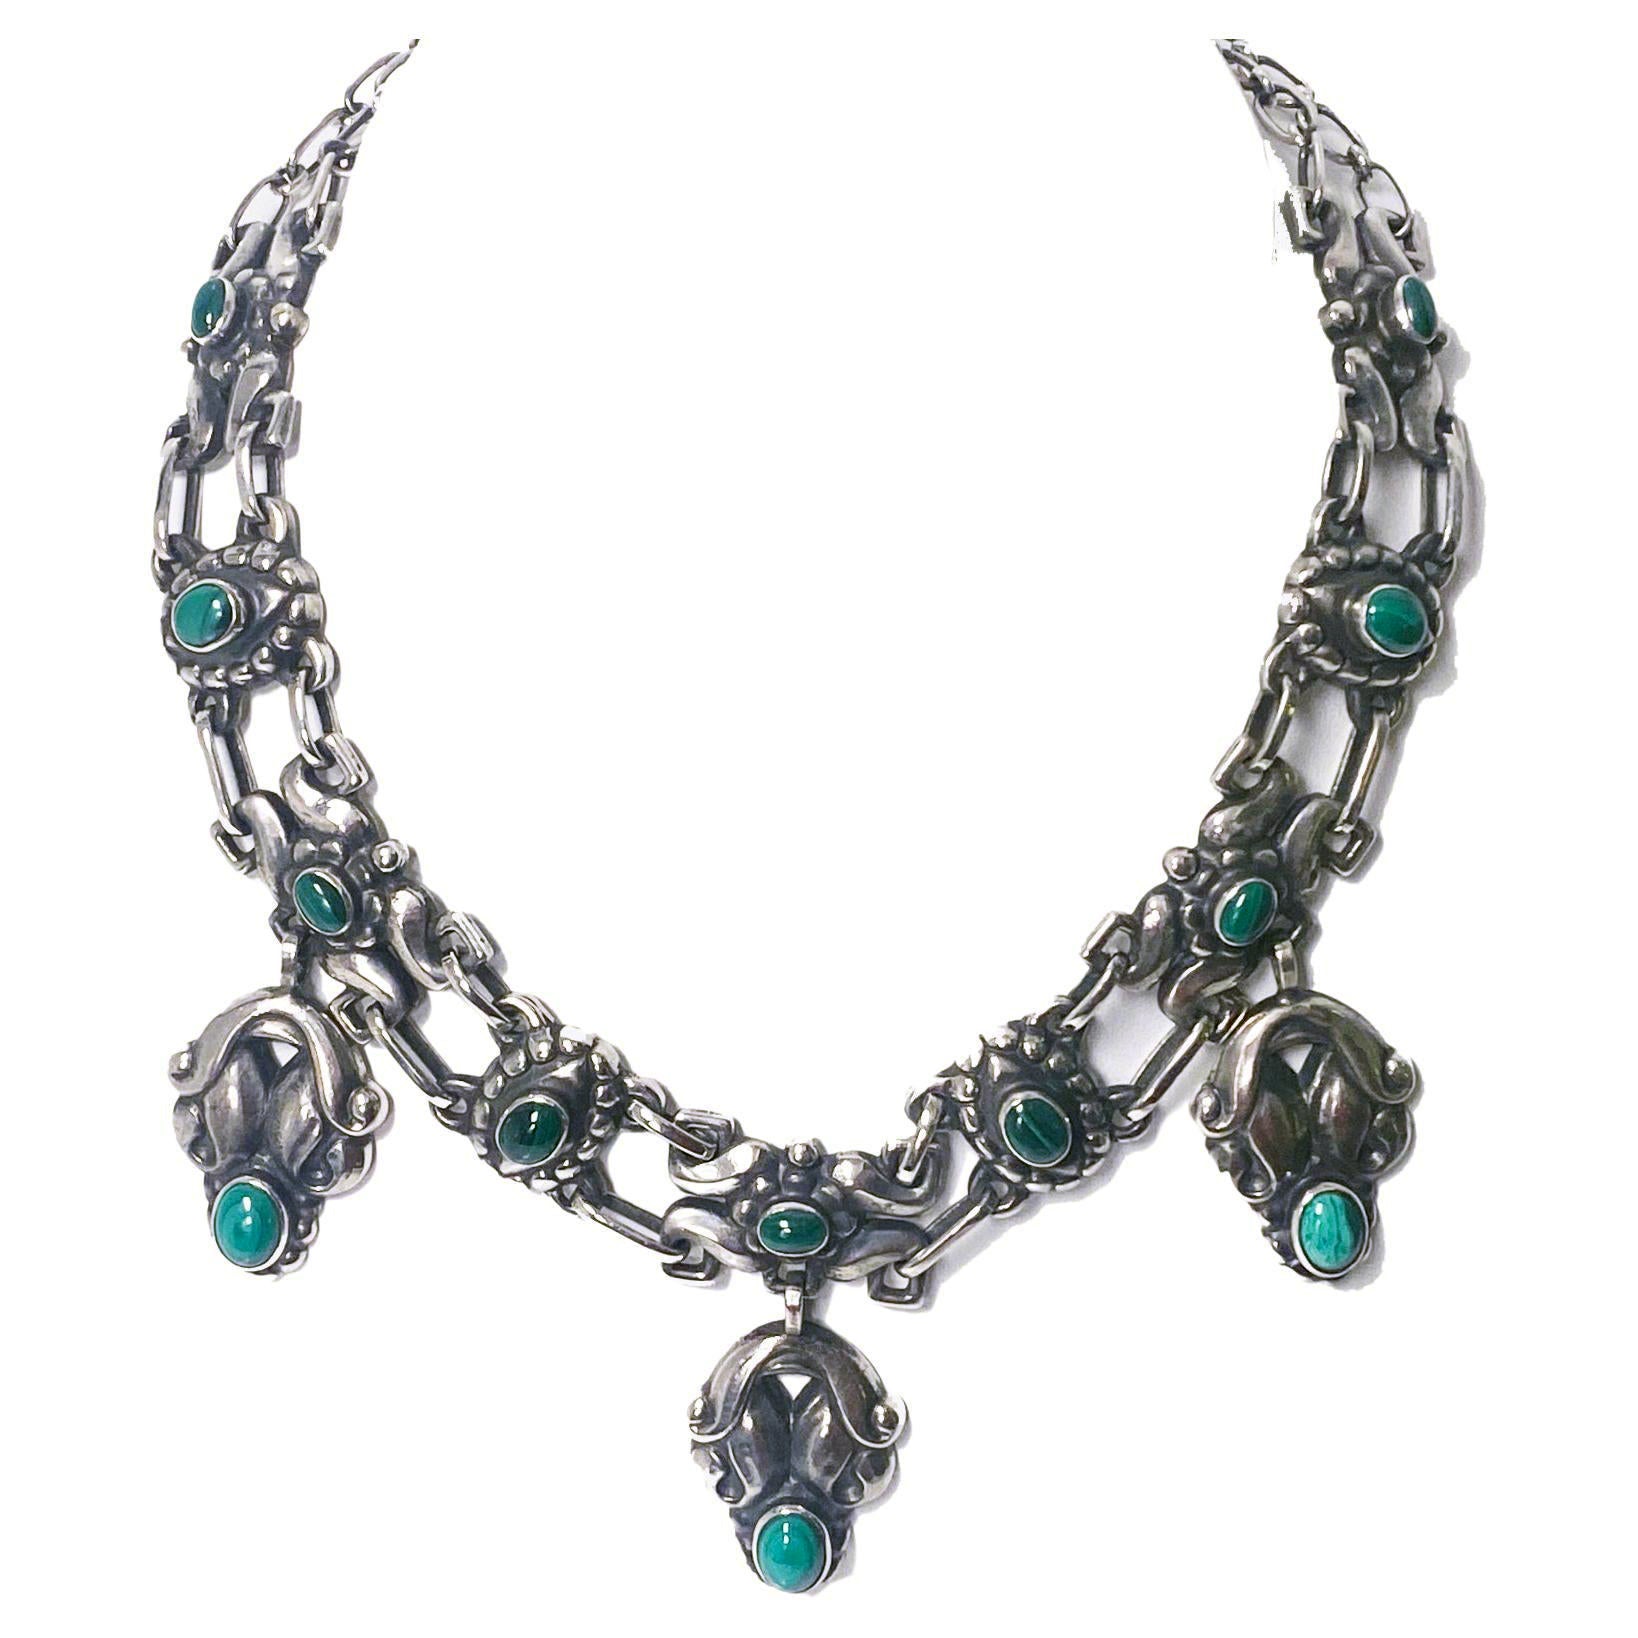 Georg Jensen rare design Silver Malachite Necklace C. 1935, design No. 14